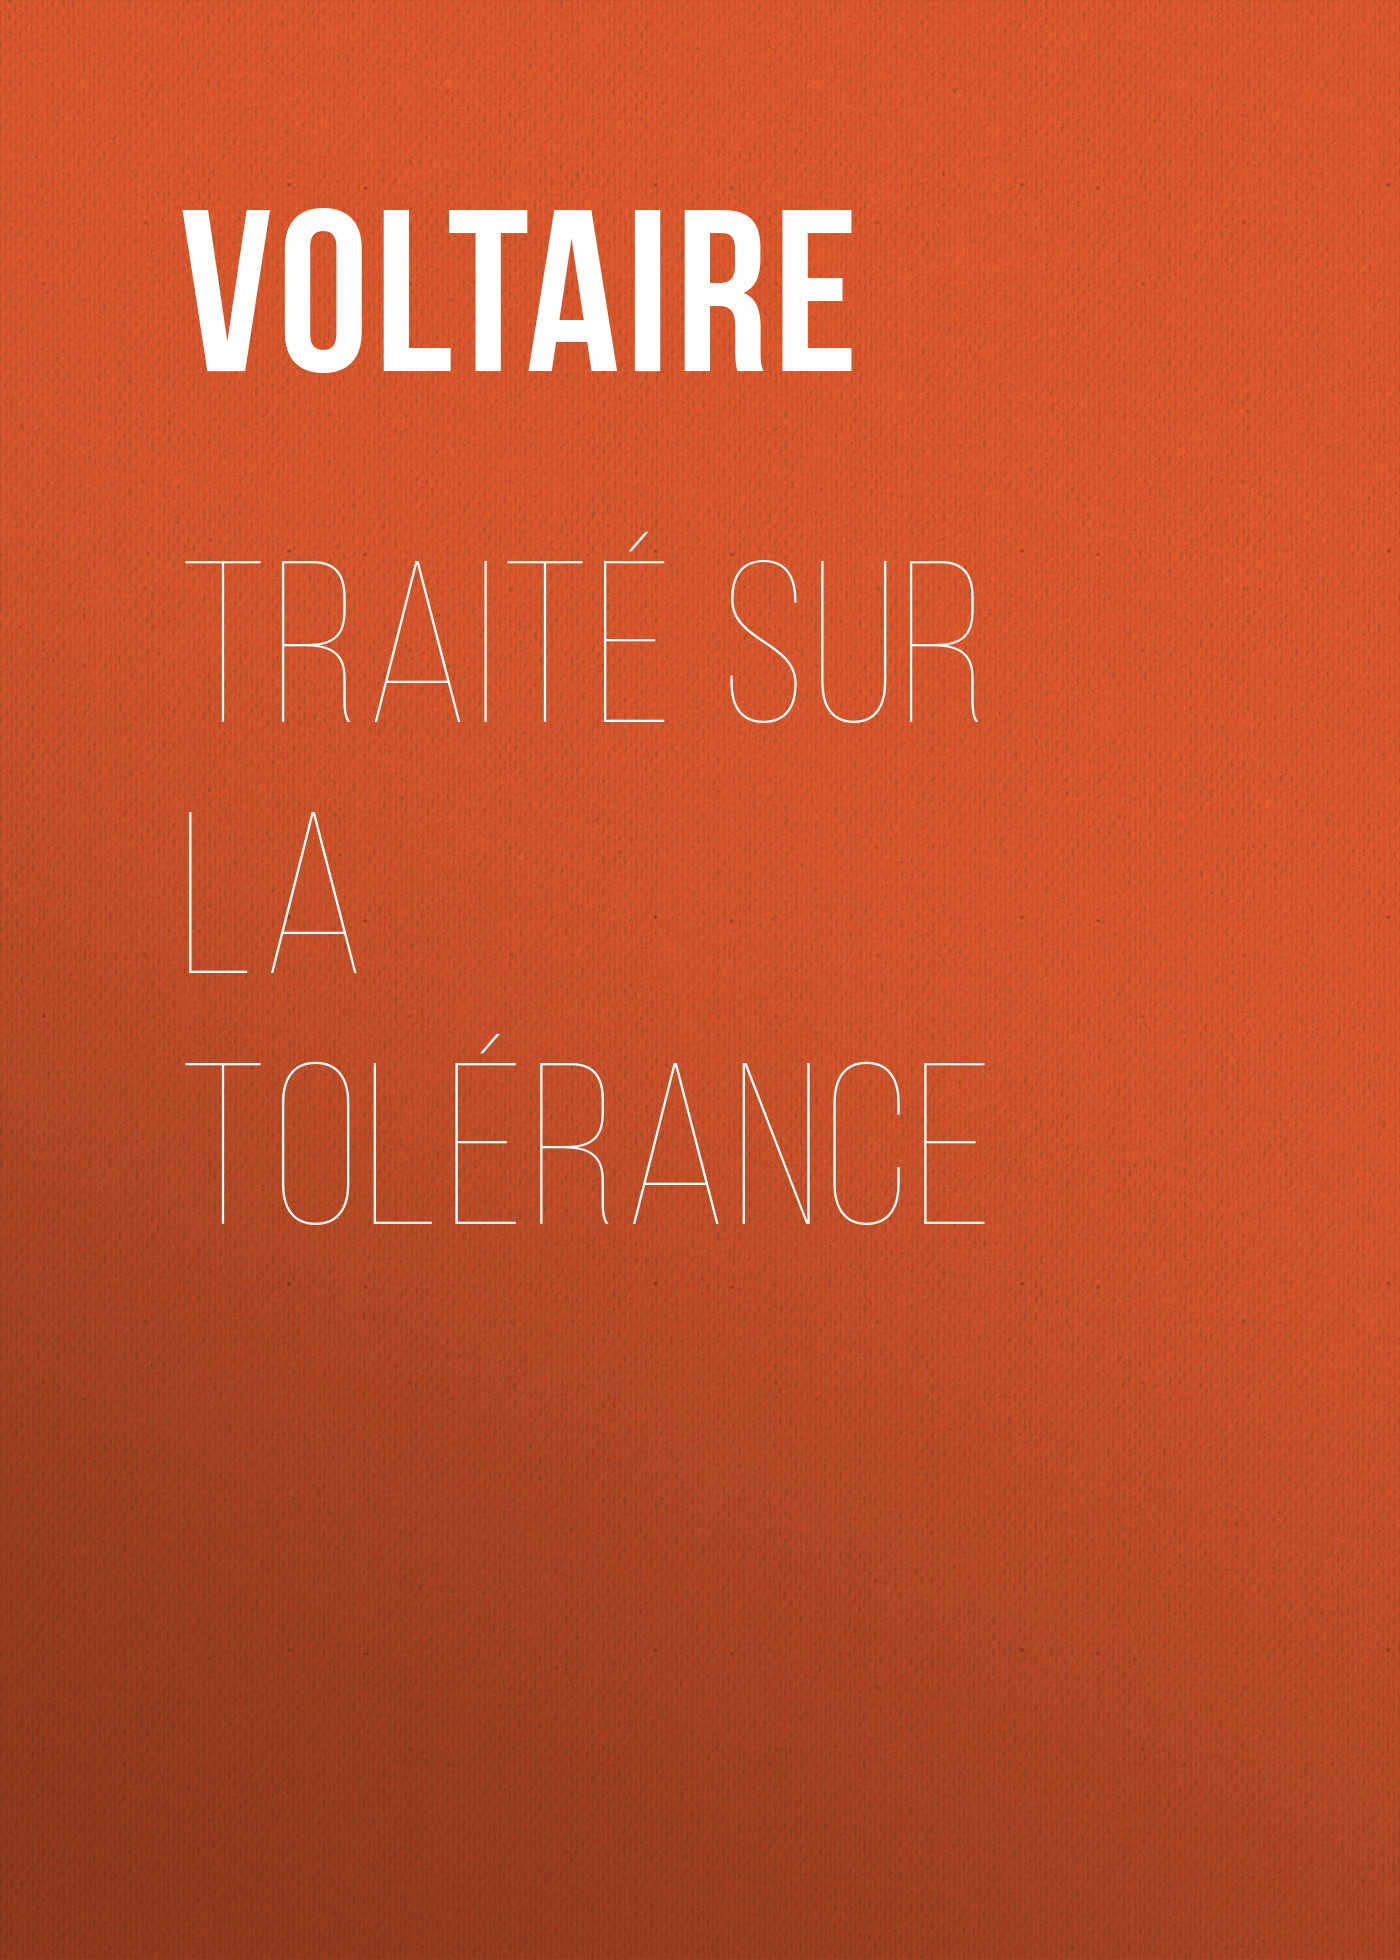 Книга Traité sur la tolérance из серии , созданная  Voltaire, может относится к жанру Философия, Литература 18 века, Зарубежная классика. Стоимость электронной книги Traité sur la tolérance с идентификатором 25561524 составляет 0 руб.